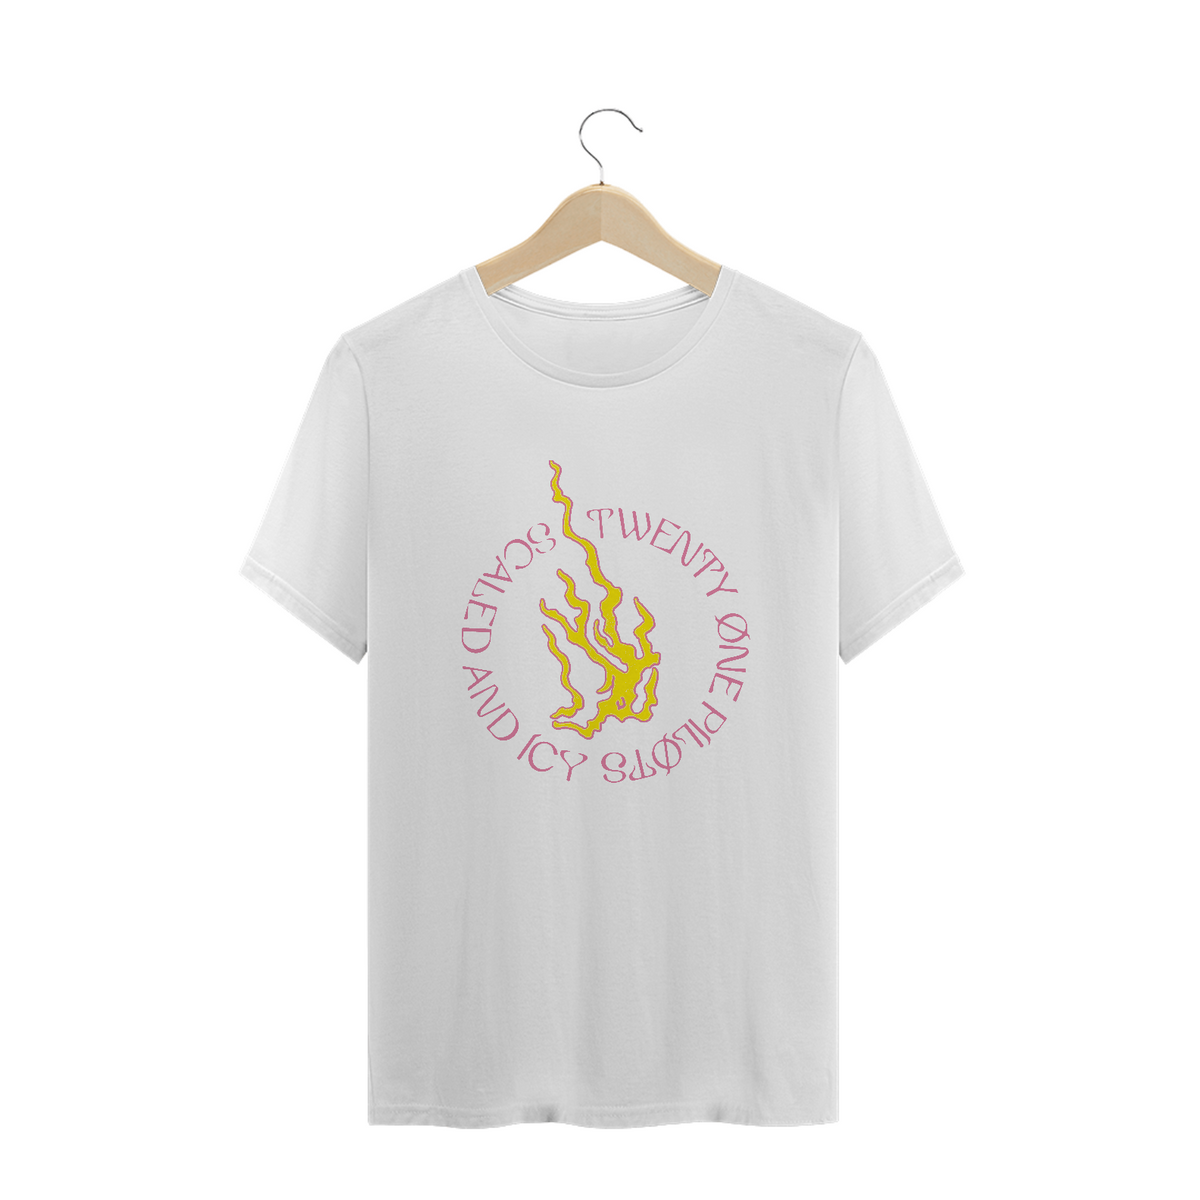 Nome do produto: Camiseta Flame - Twenty one pilots